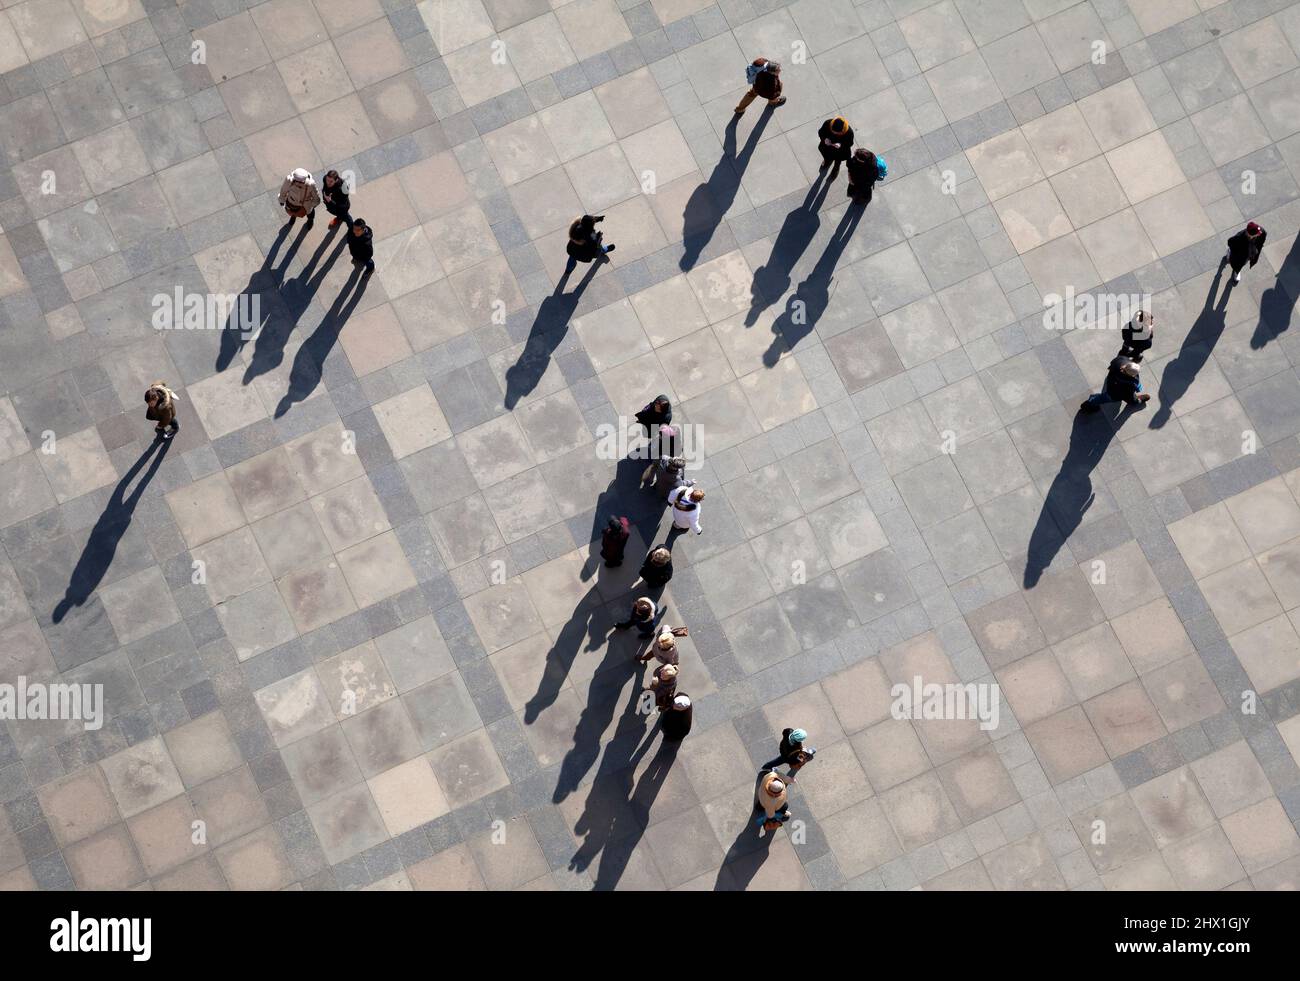 PRAGA, REPUBBLICA CECA - 19 FEBBRAIO 2015 - persone per strada, vista dall'alto Foto Stock